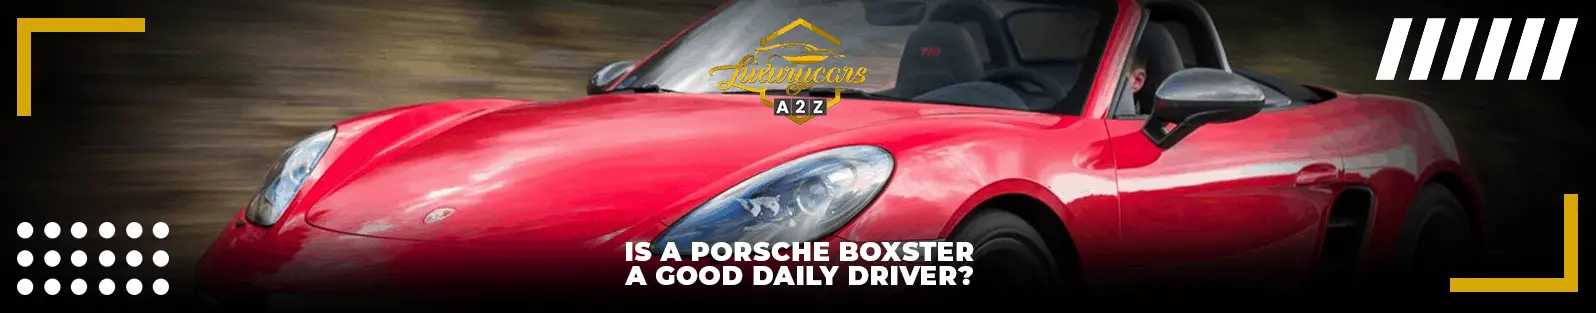 Une Porsche Boxster est-elle un bon conducteur quotidien ?